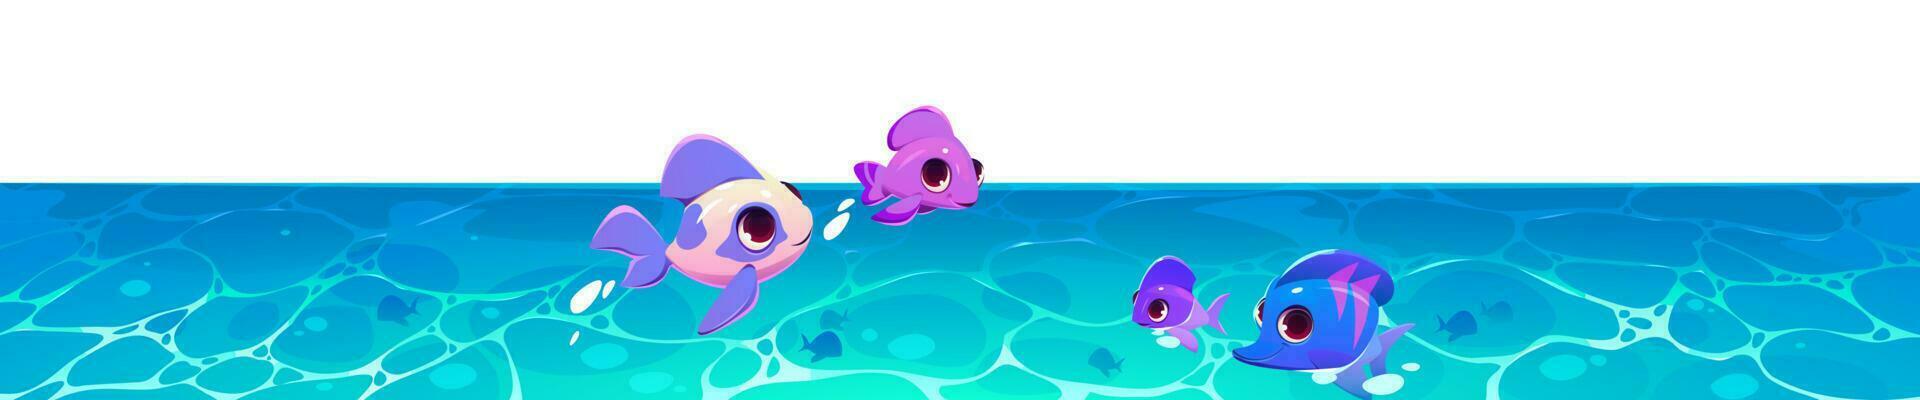 aislado dibujos animados mar submarino con pescado familia vector